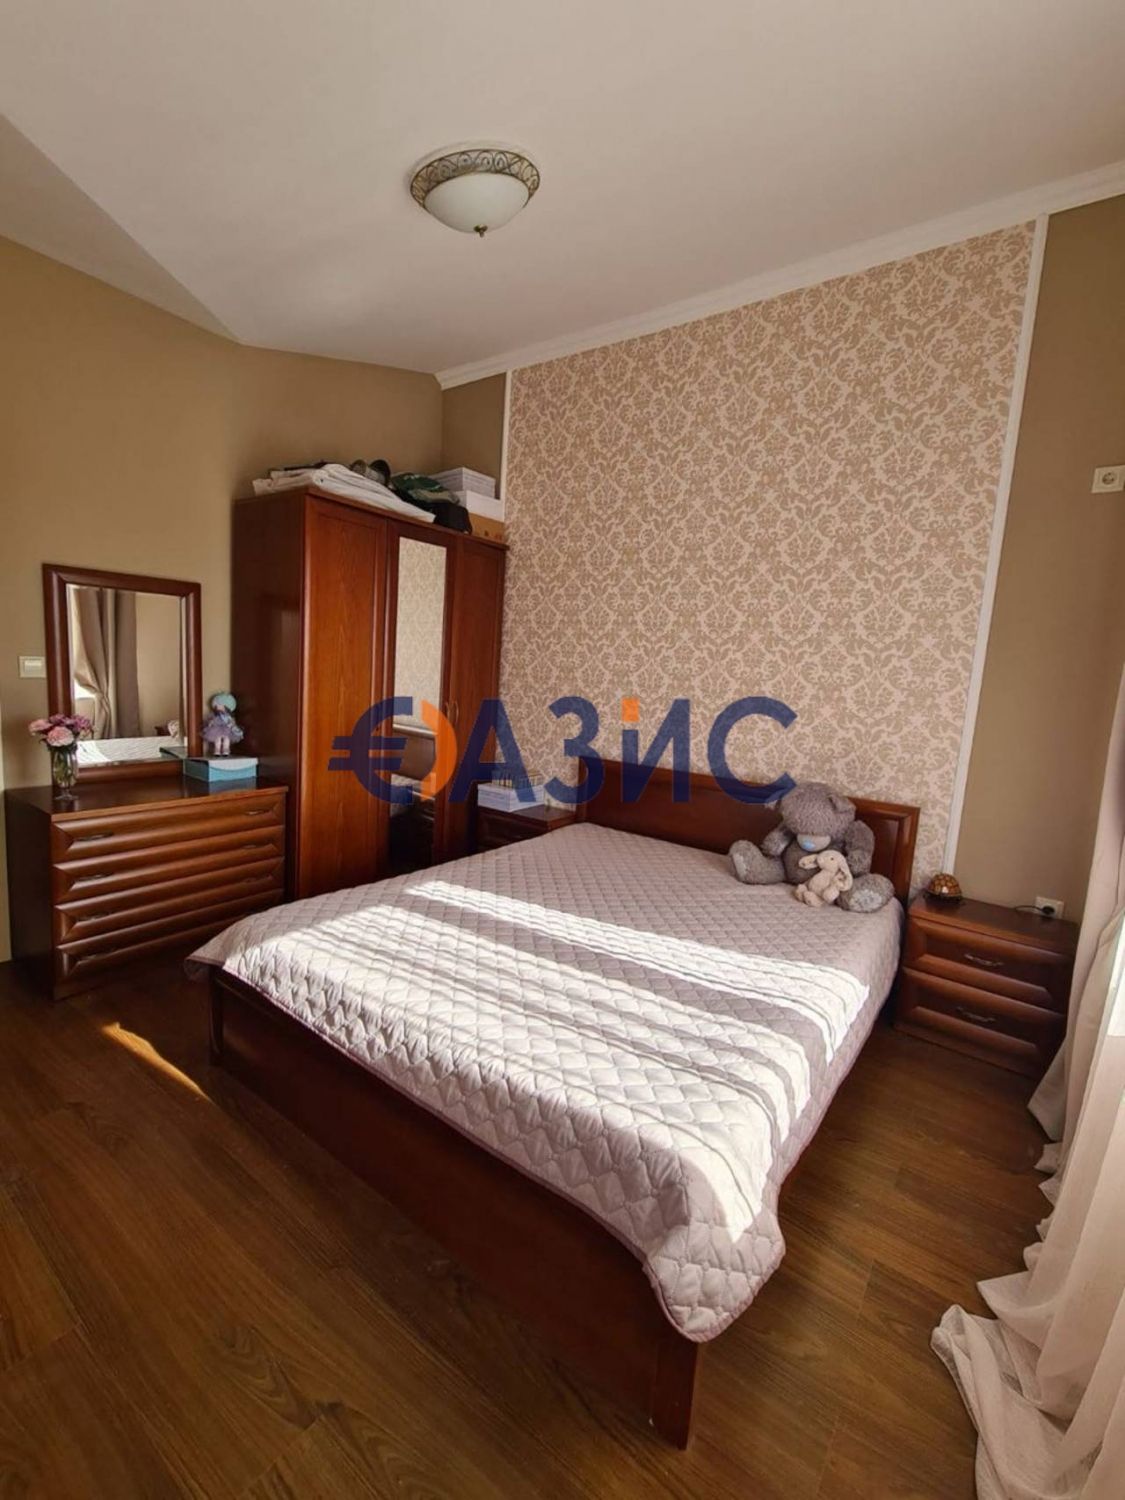 # 33085670 Двустаен апартамент в обикновена къща 5ет, 65кв м изглед